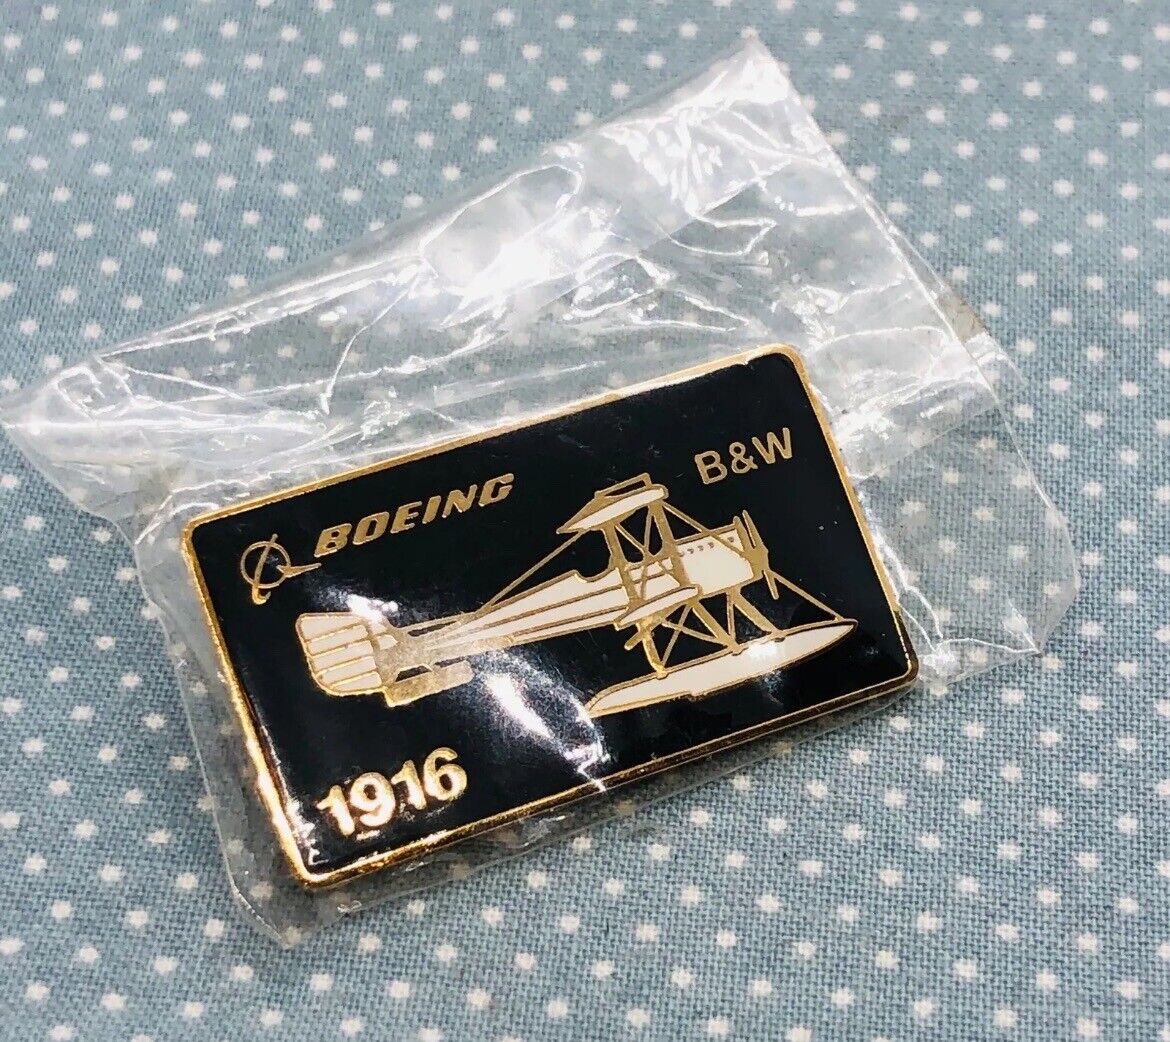 Boeing 1916 B&W Float Plane Enamel Advertising Lapel Pin Sealed